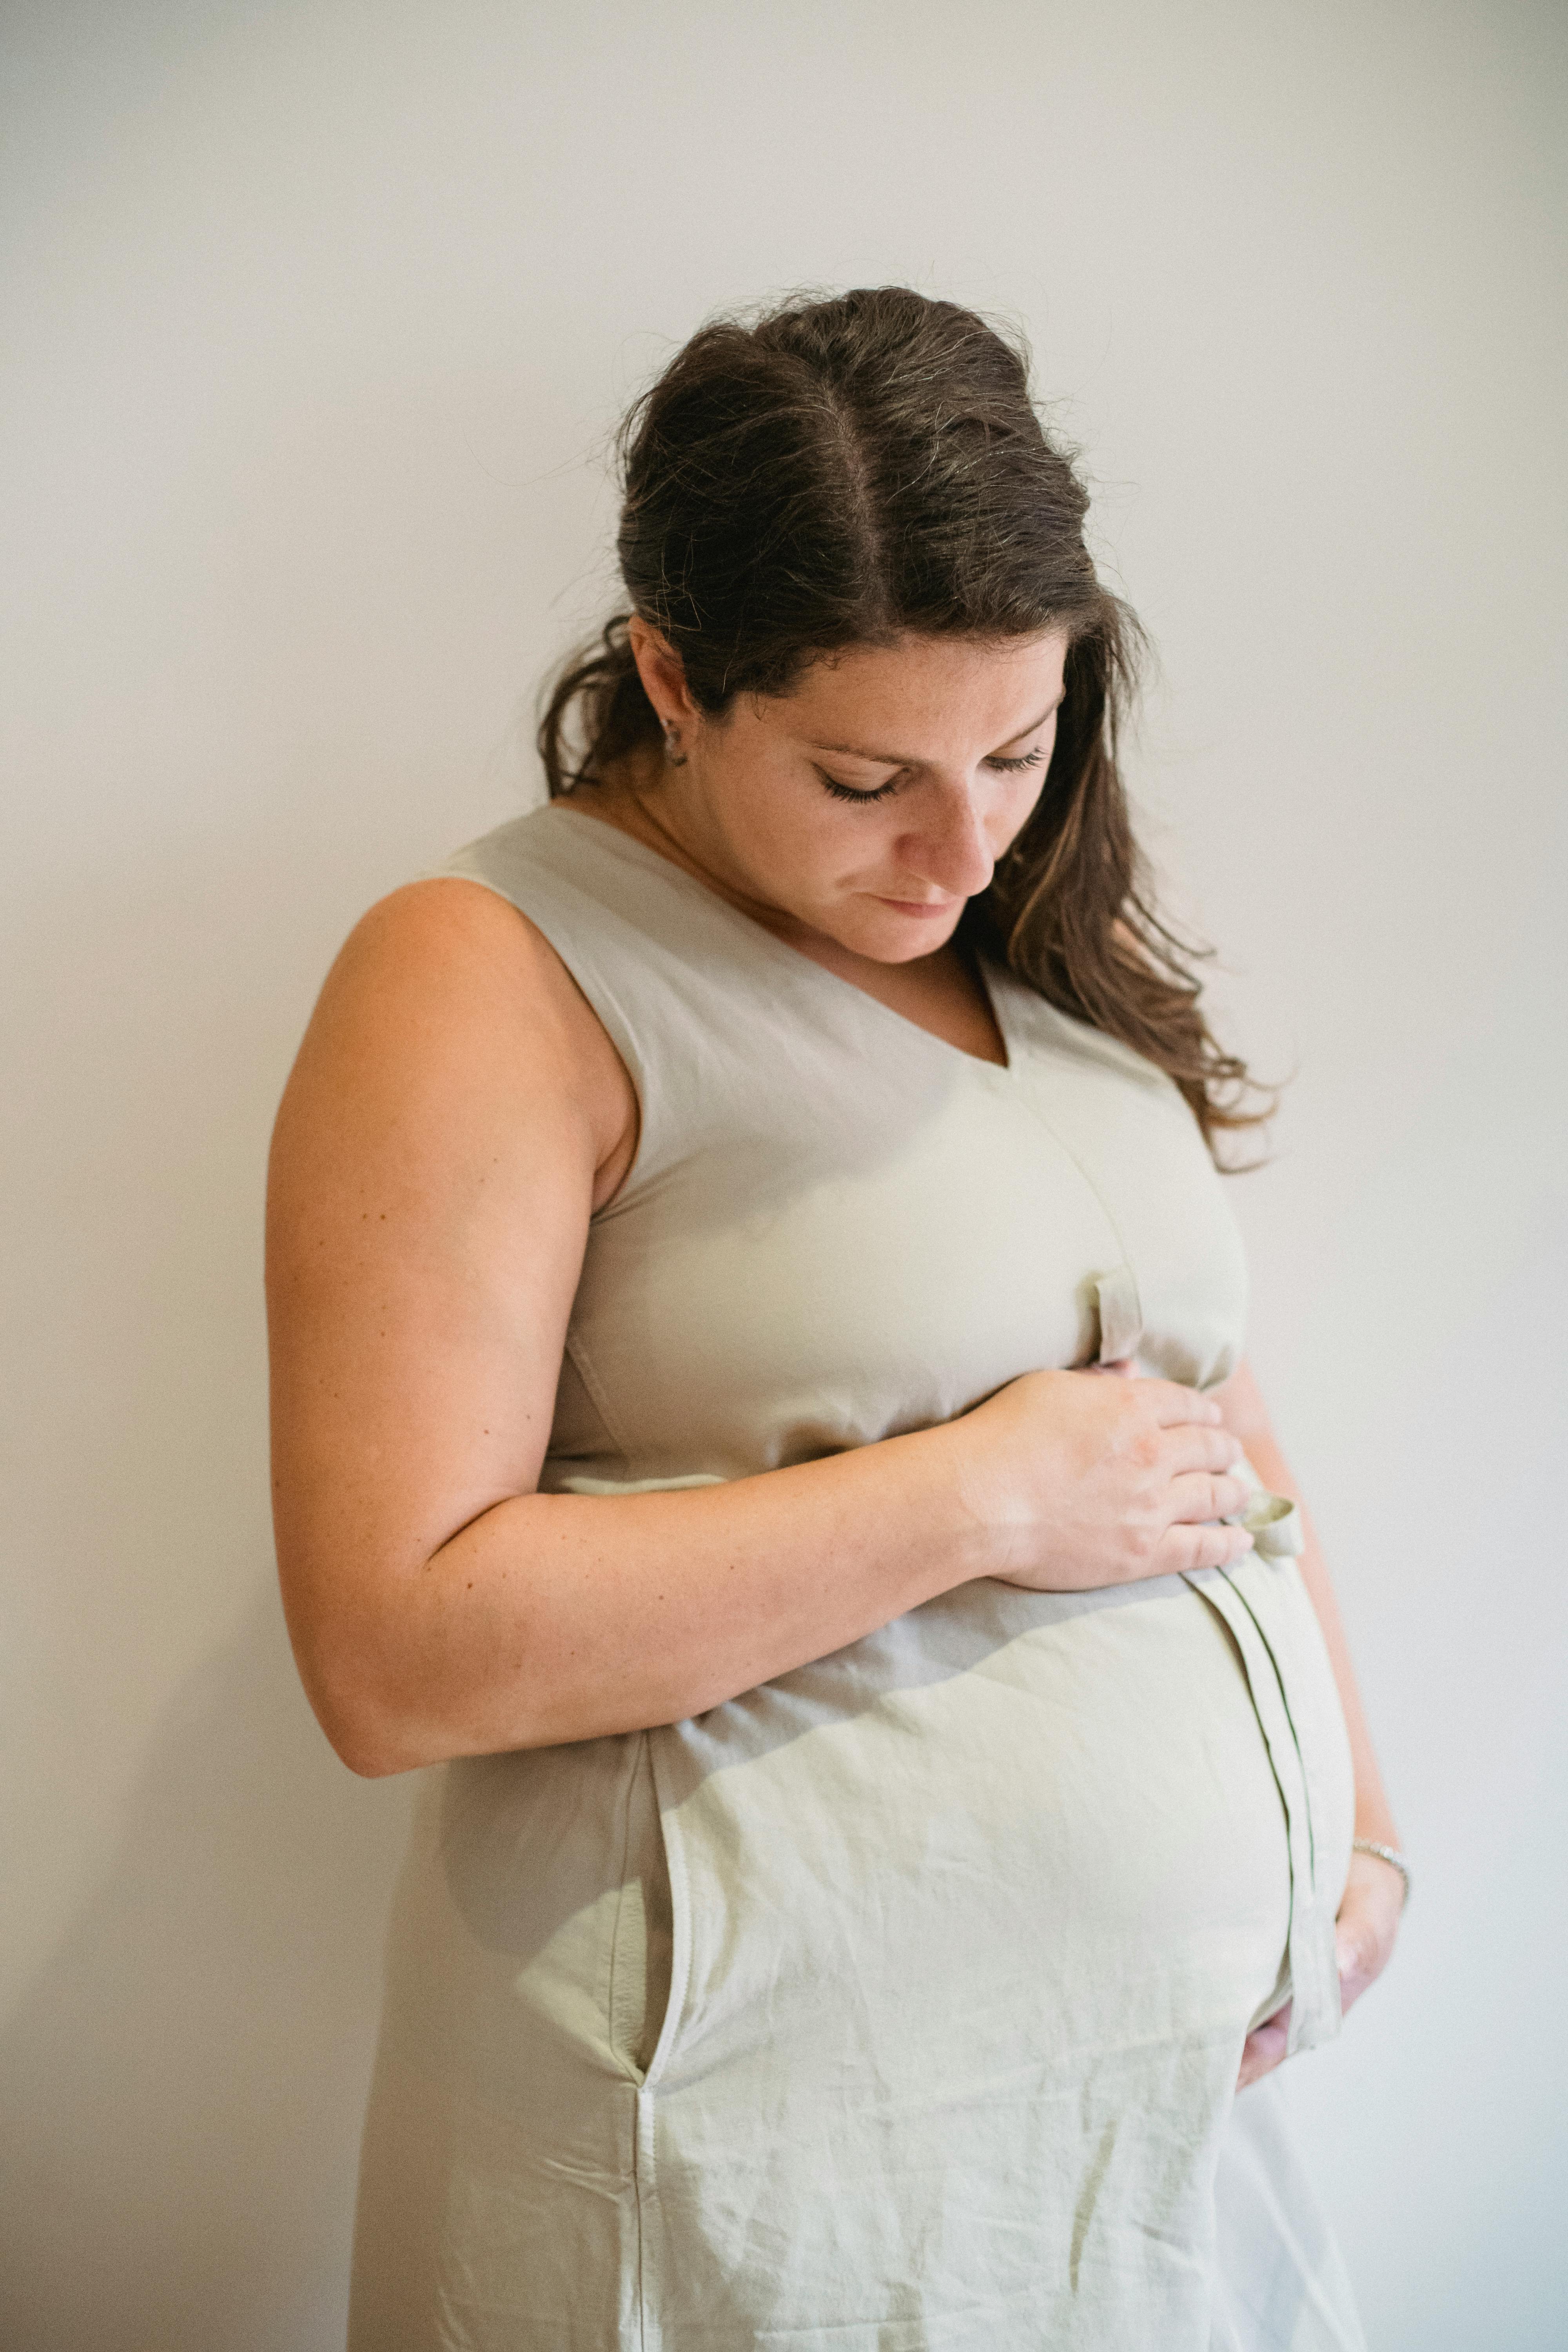 Una mujer embarazada de aspecto triste | Fuente: Pexels